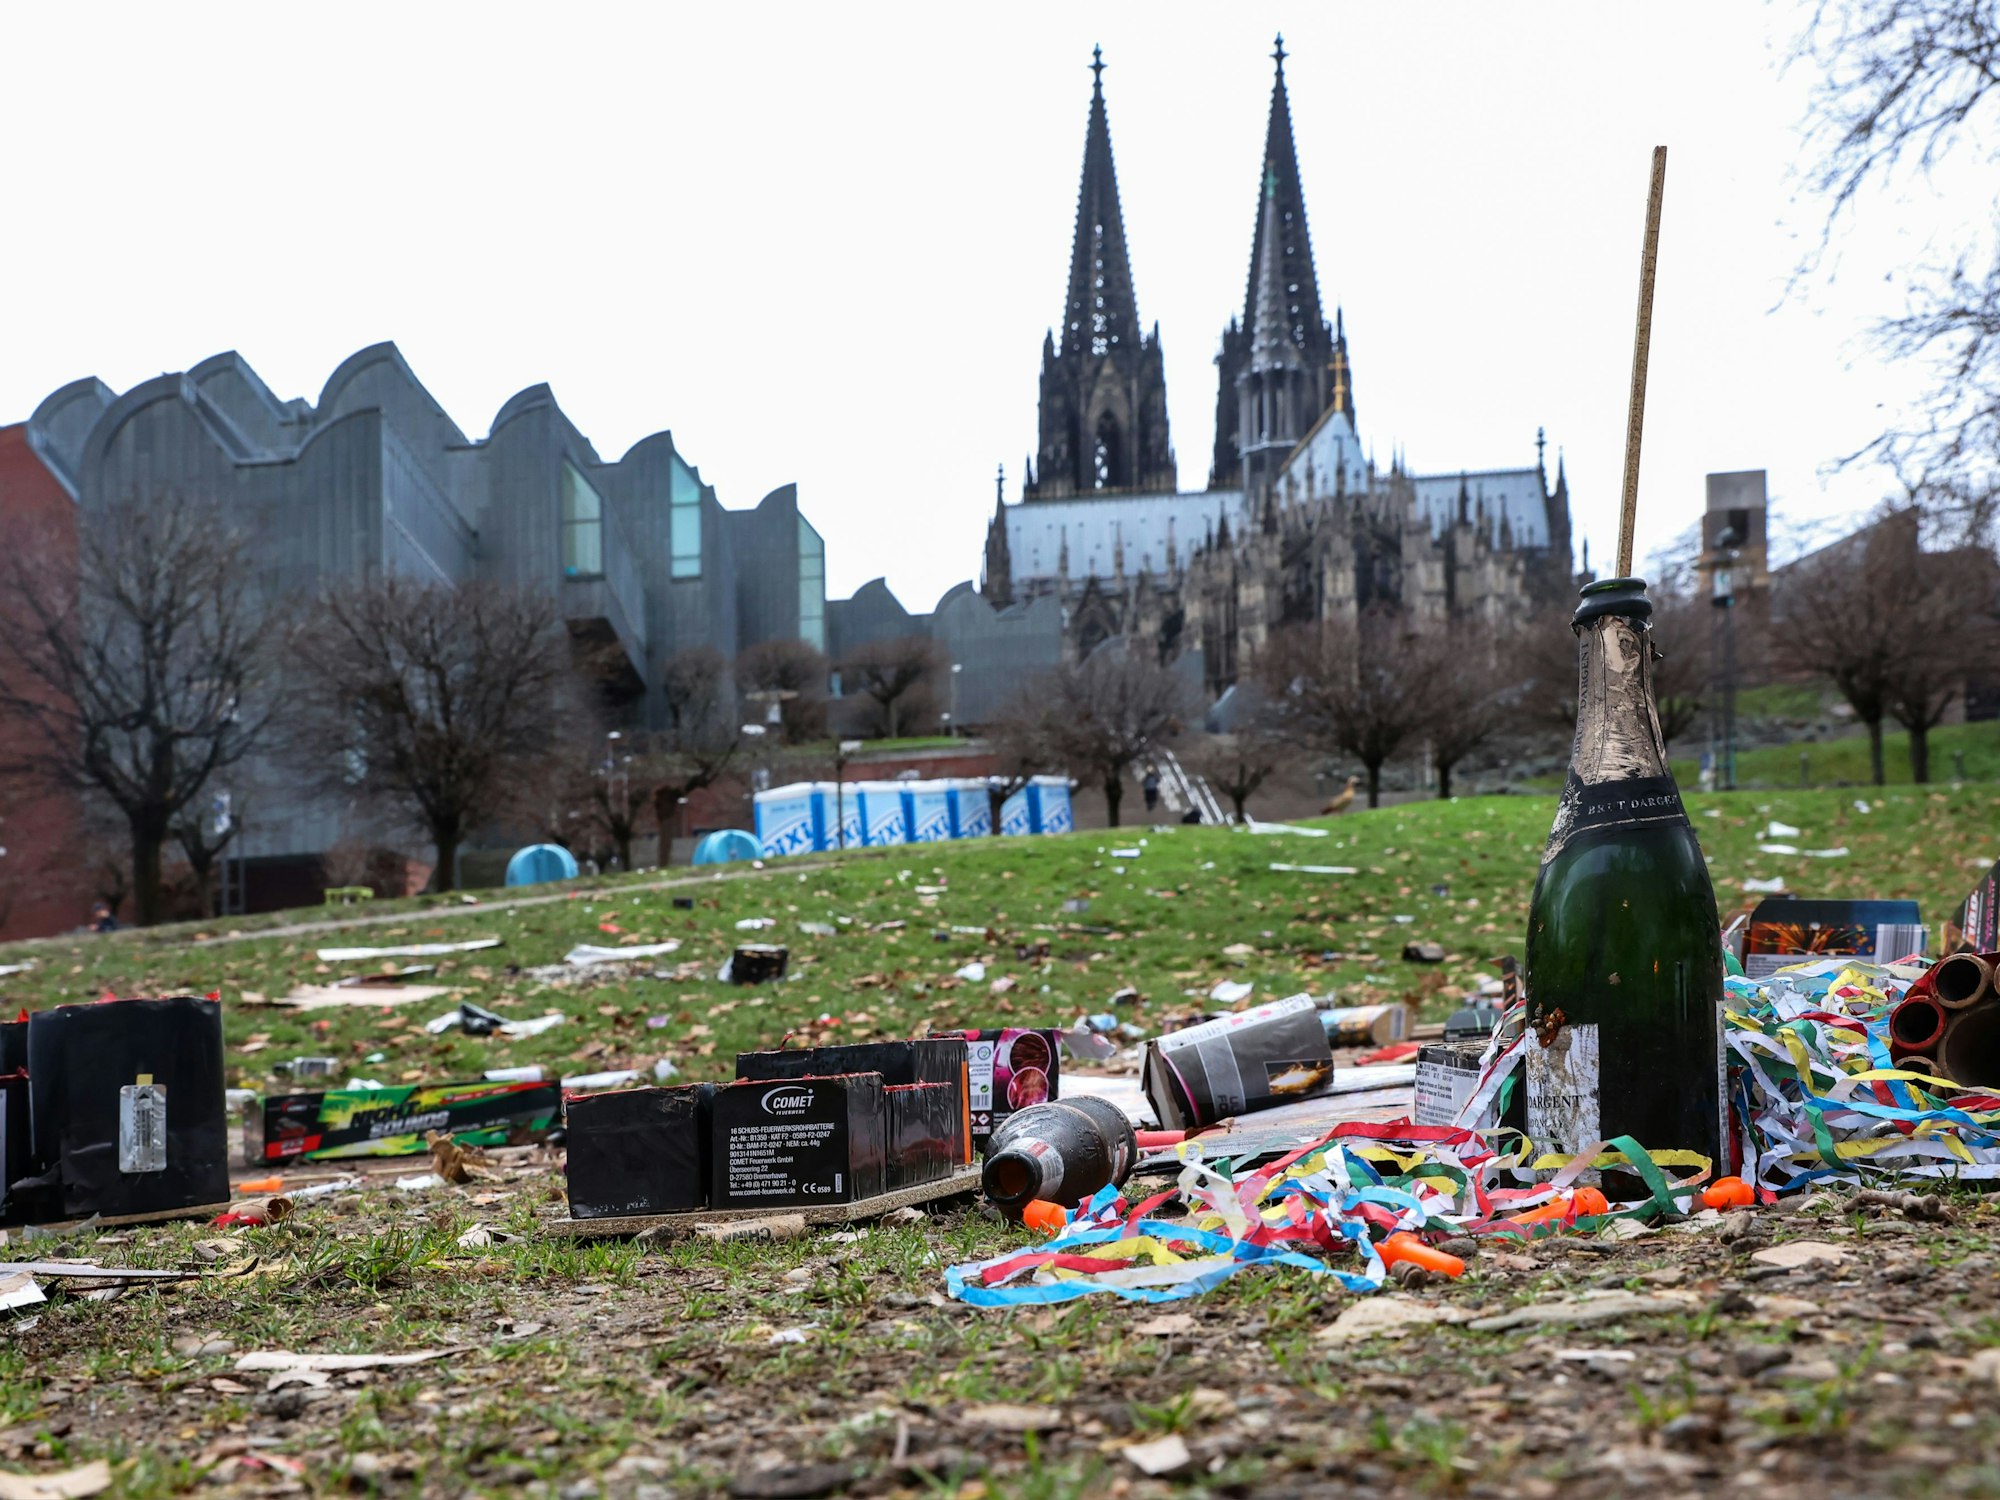 Müll liegt nach Silvester im Rheingarten in Köln. Im Hintergrund ragt der Kölner Dom hervor.